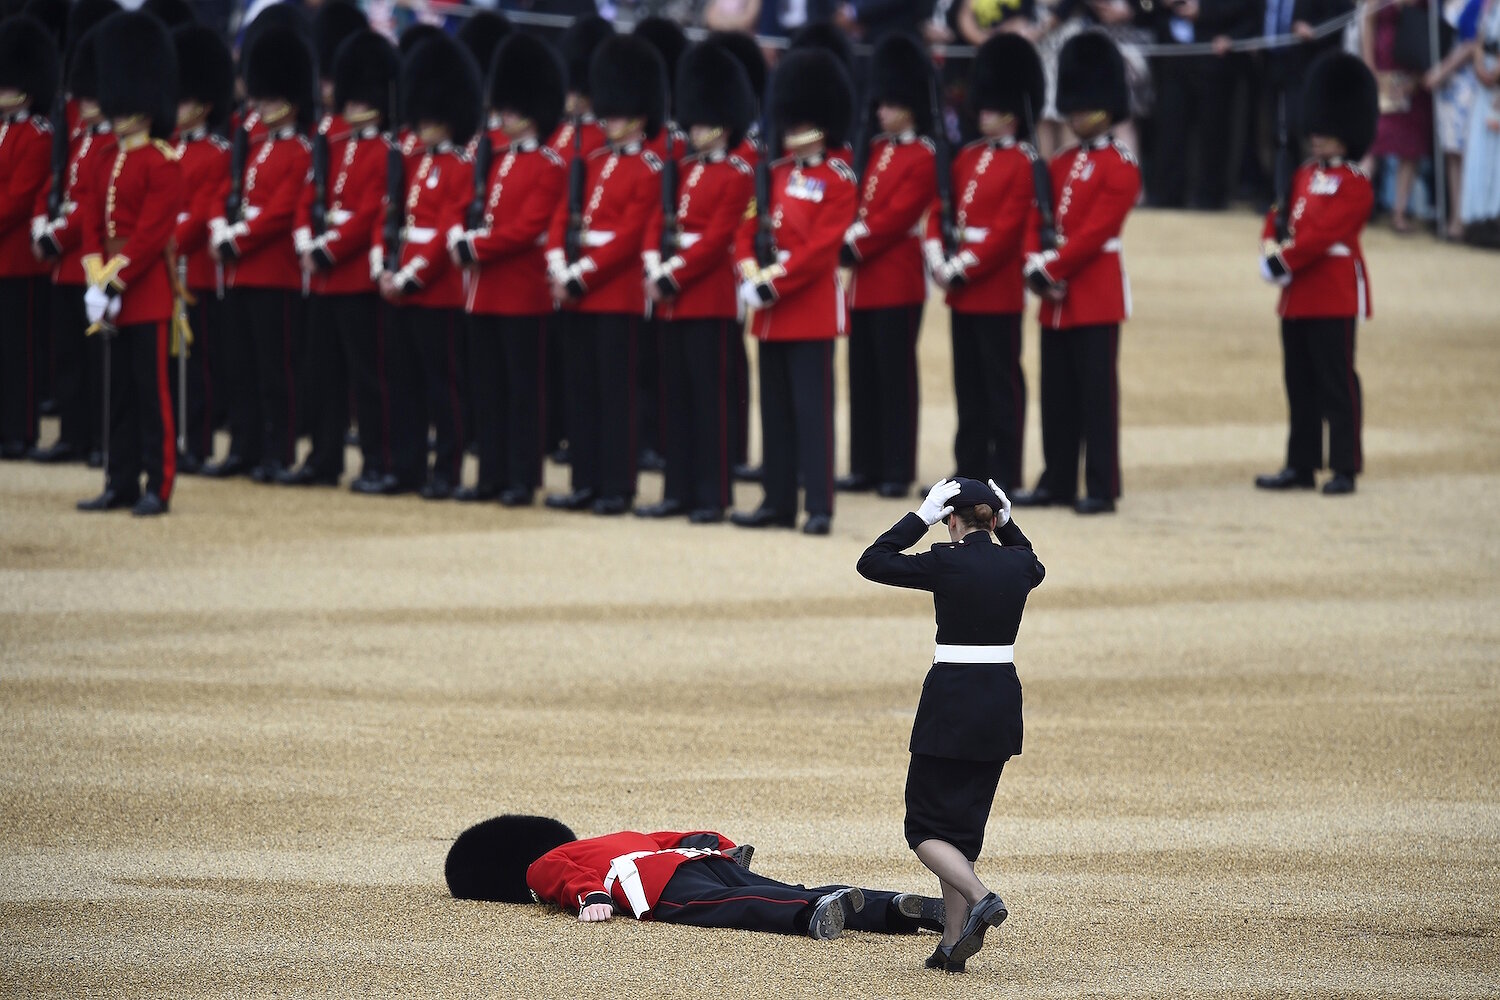 <p>11 июня. Лондон, Великобритания. Гвардеец упал в обморок на ежегодном параде в честь празднования дня рождения королевы Елизаветы &mdash; ей исполнилось 90 лет.</p>